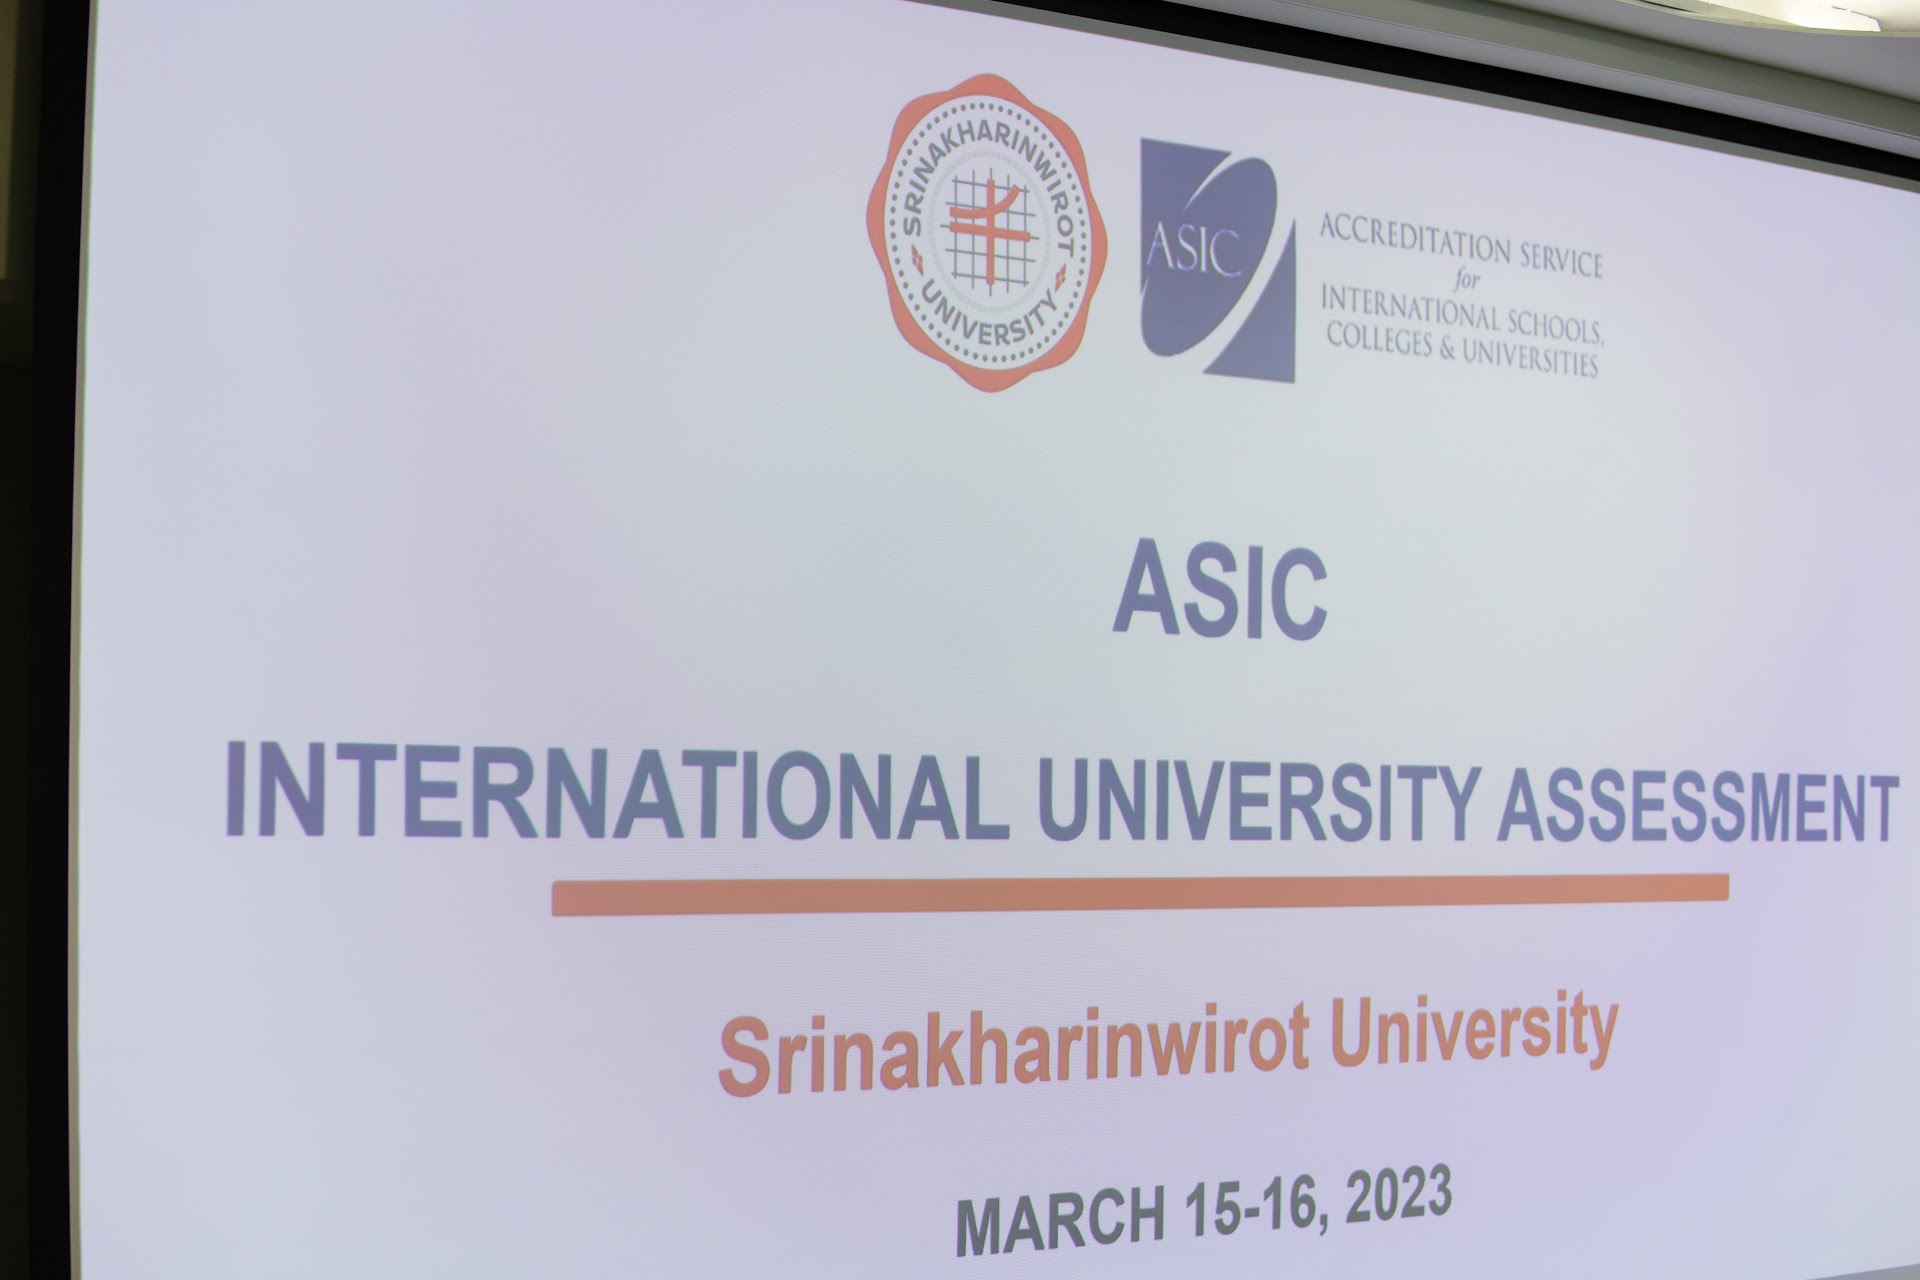 -กิจกรรม : การประเมินคุณภาพการศึกษาภายใน ระดับนานาชาติ (ASIC)